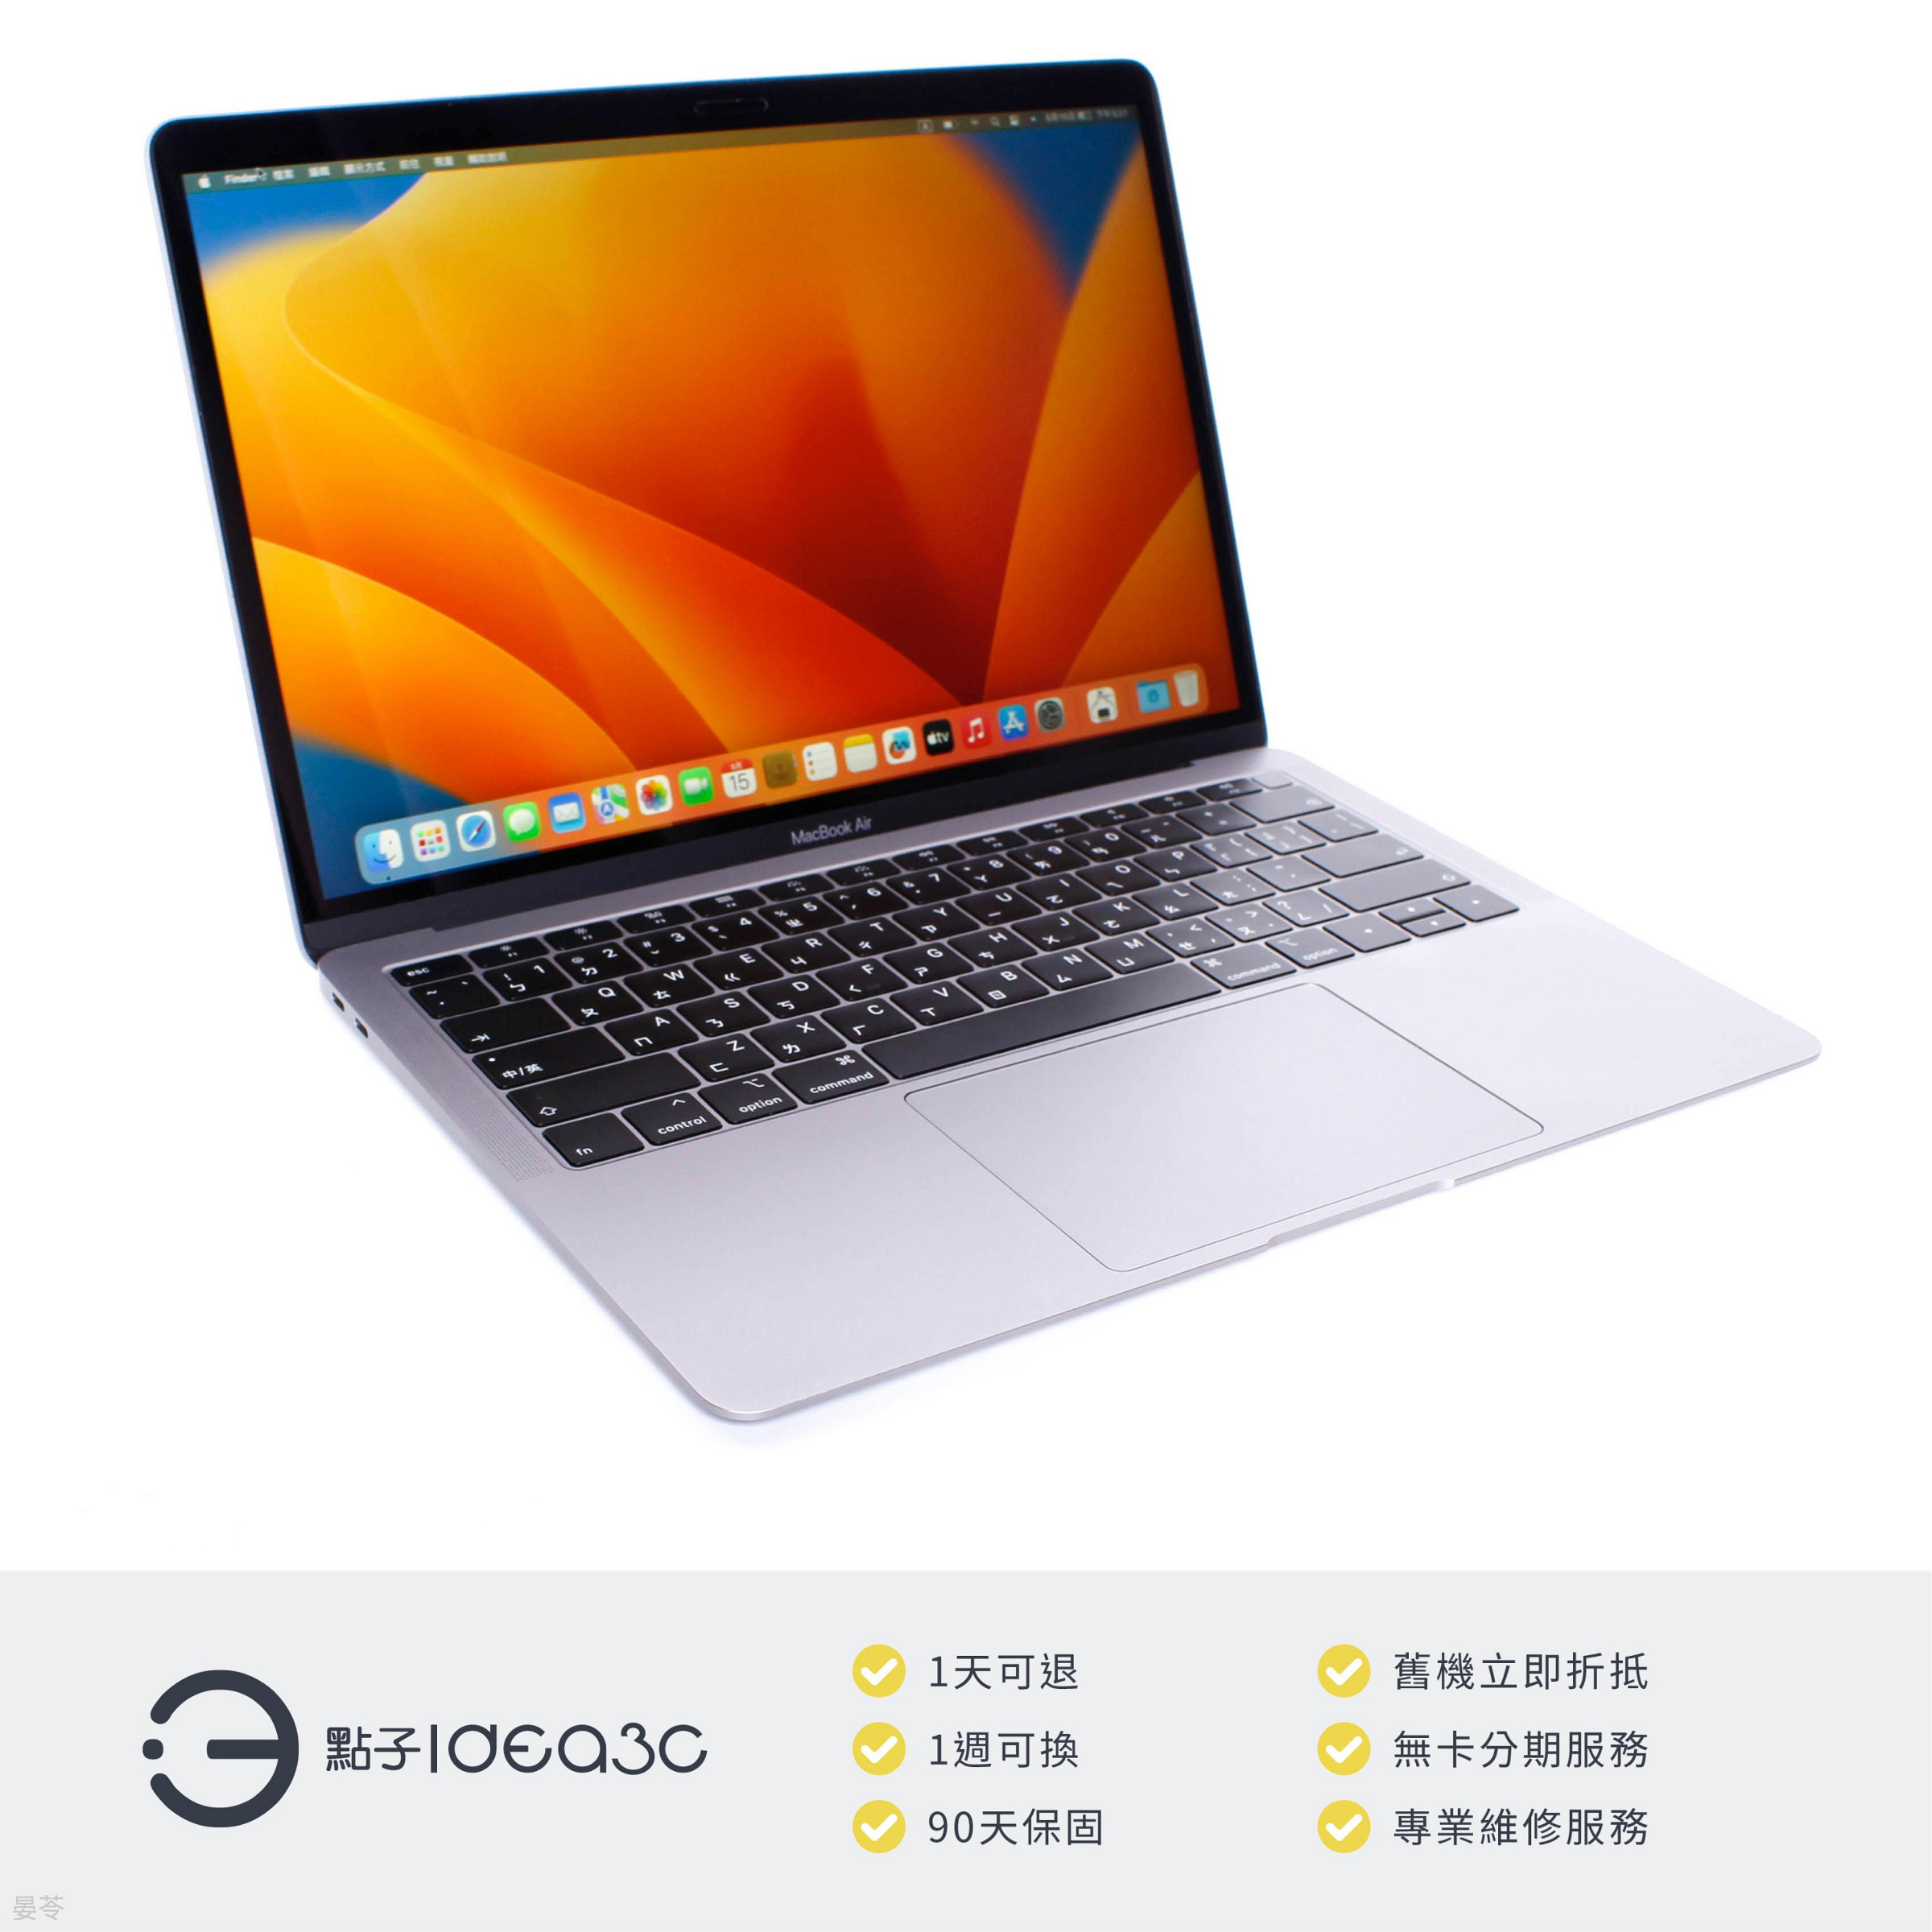 「點子3C」MacBook Air 13吋筆電 i5 1.6G 銀色【店保3個月】8G 128G SSD A1932 MVFH2TA 2019年款 ZJ058